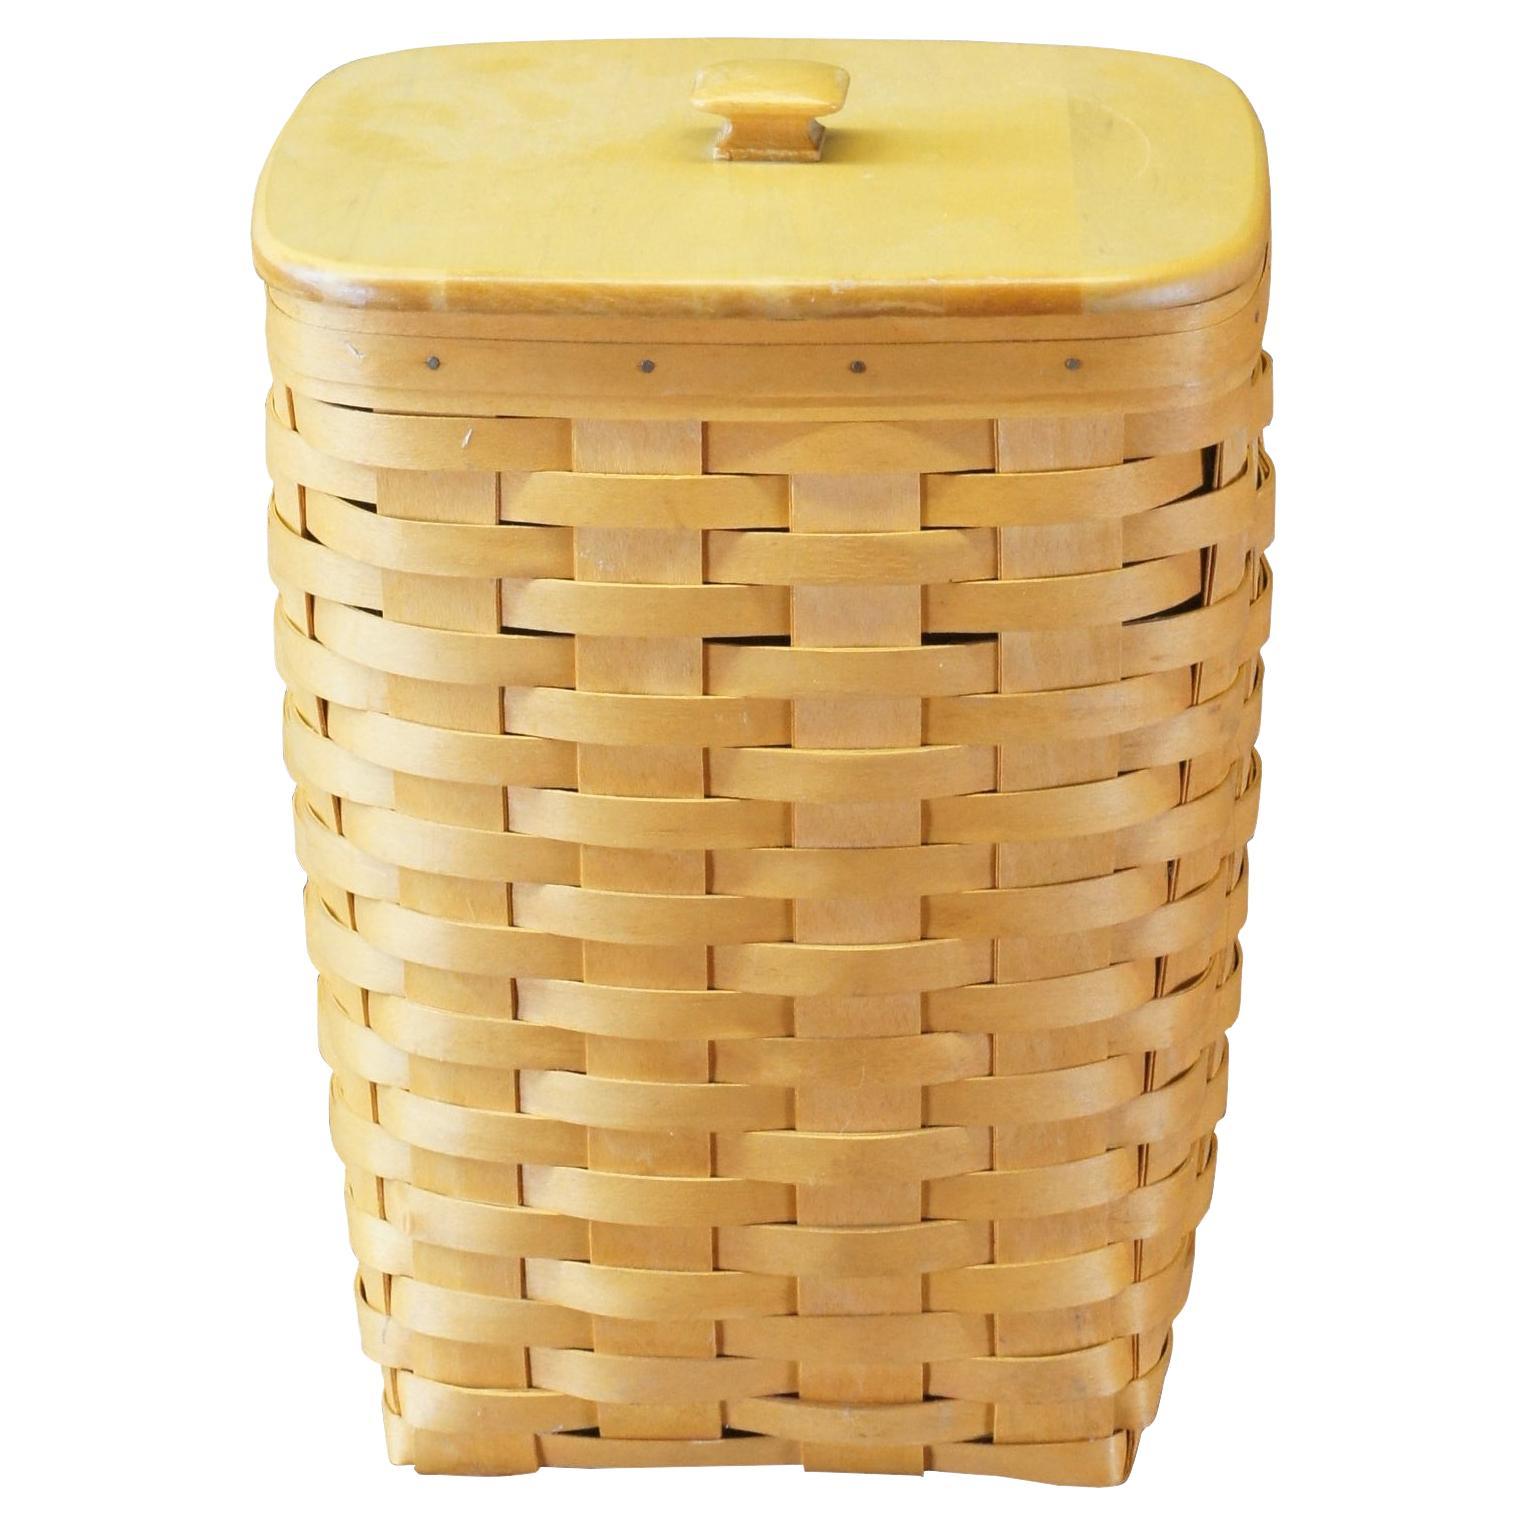 1990s Vintage Longaberger Woven Lidded Waste Basket Trash Can Plastic Insert 13"